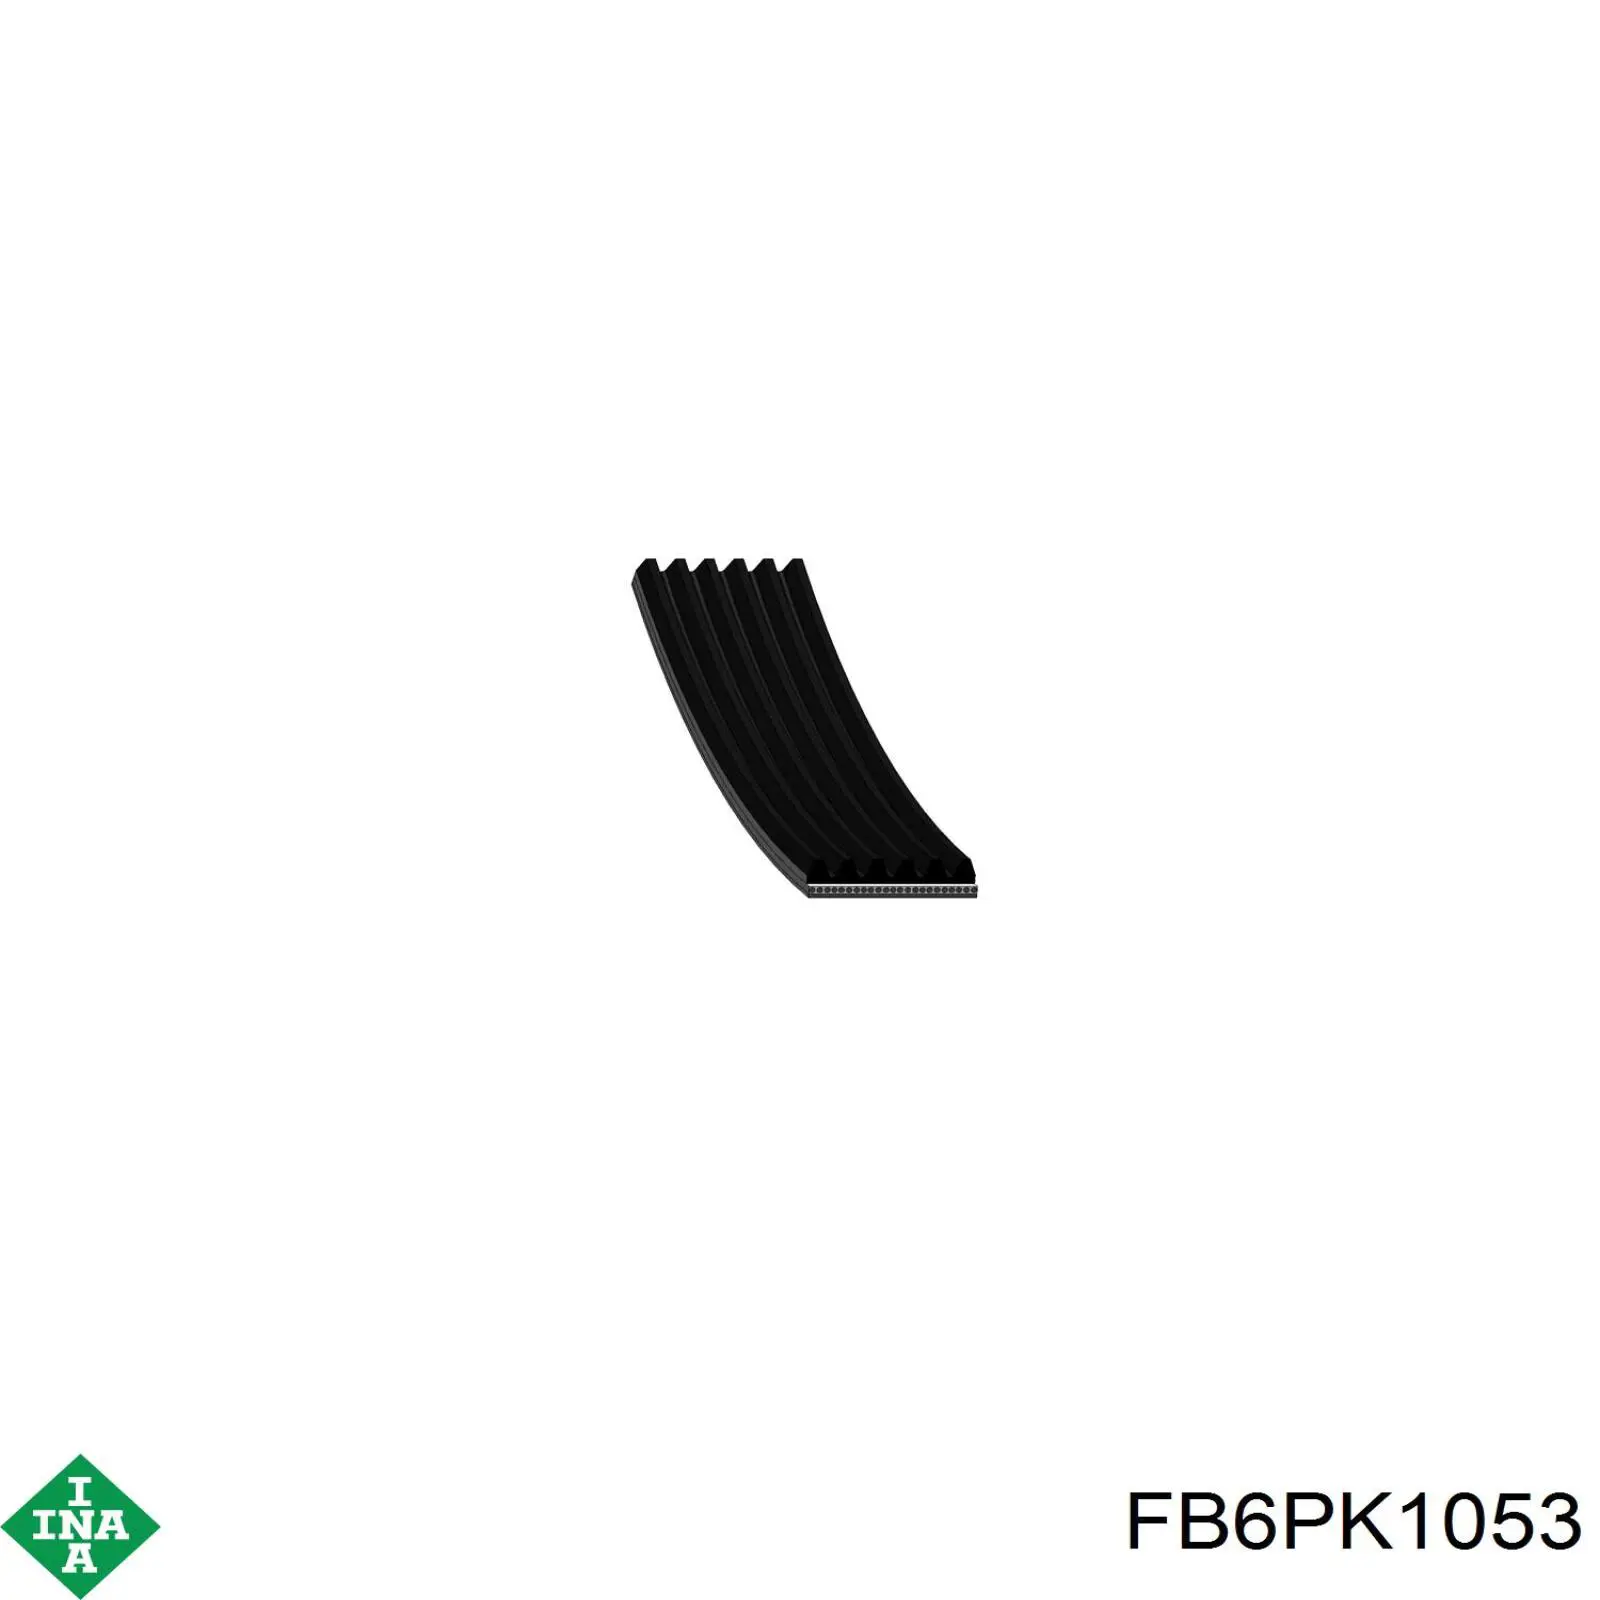 FB6PK1053 INA correa trapezoidal